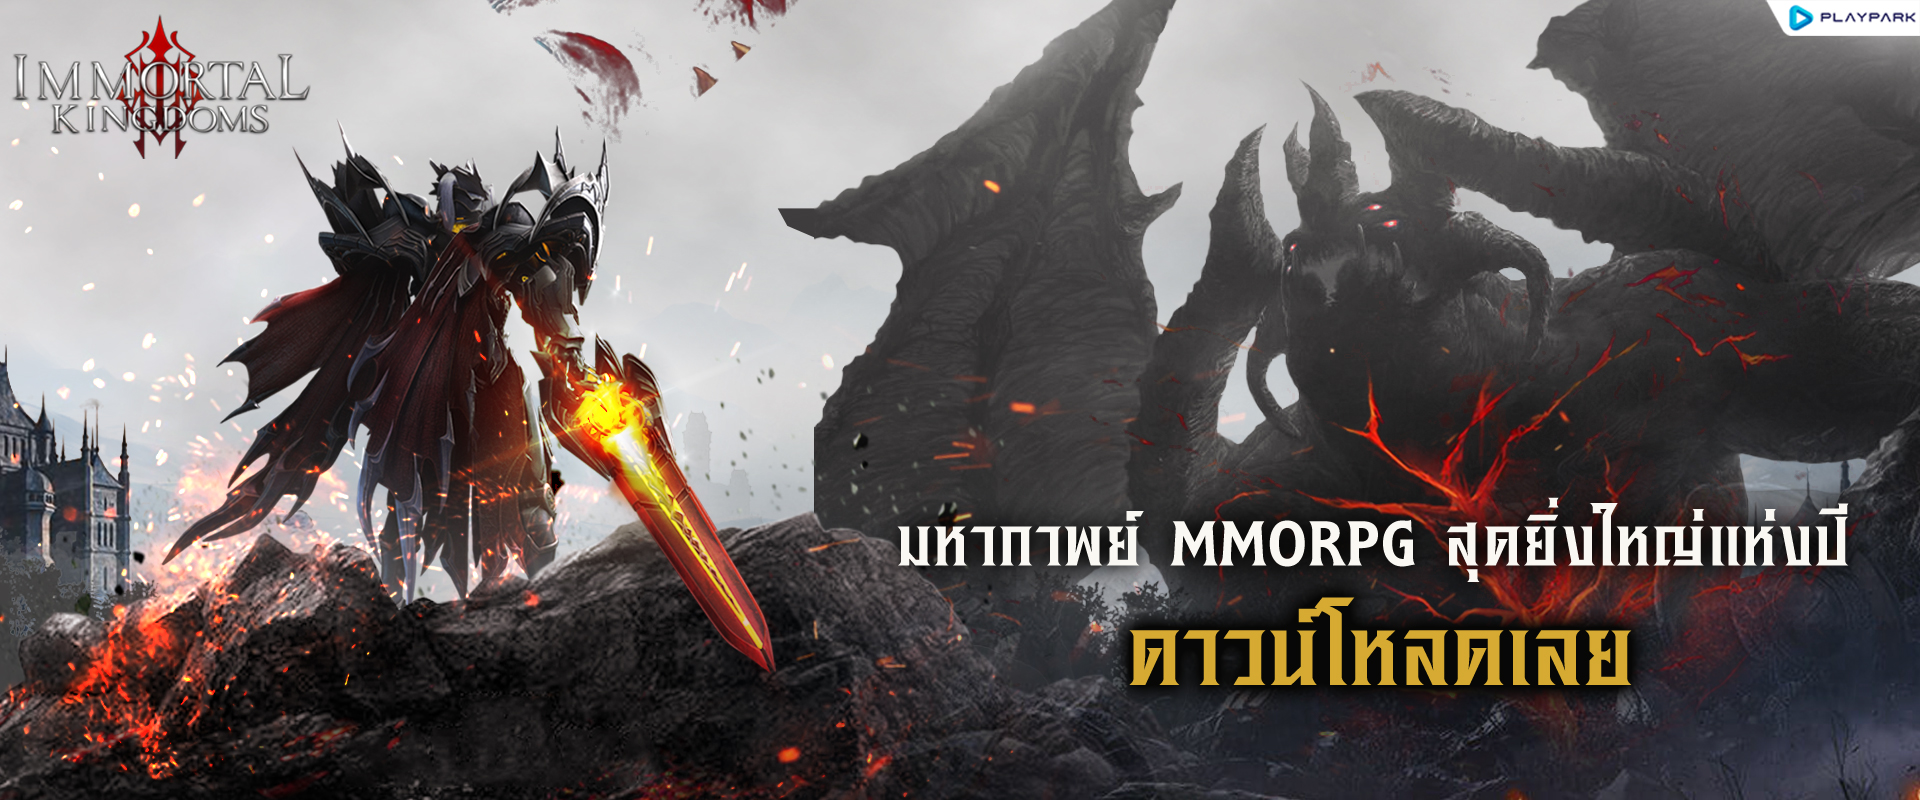 ดาวน์โหลดและเล่น Immortal Kingdoms M บน PC ด้วย NoxPlayer โปรแกรมจำลองฟรี